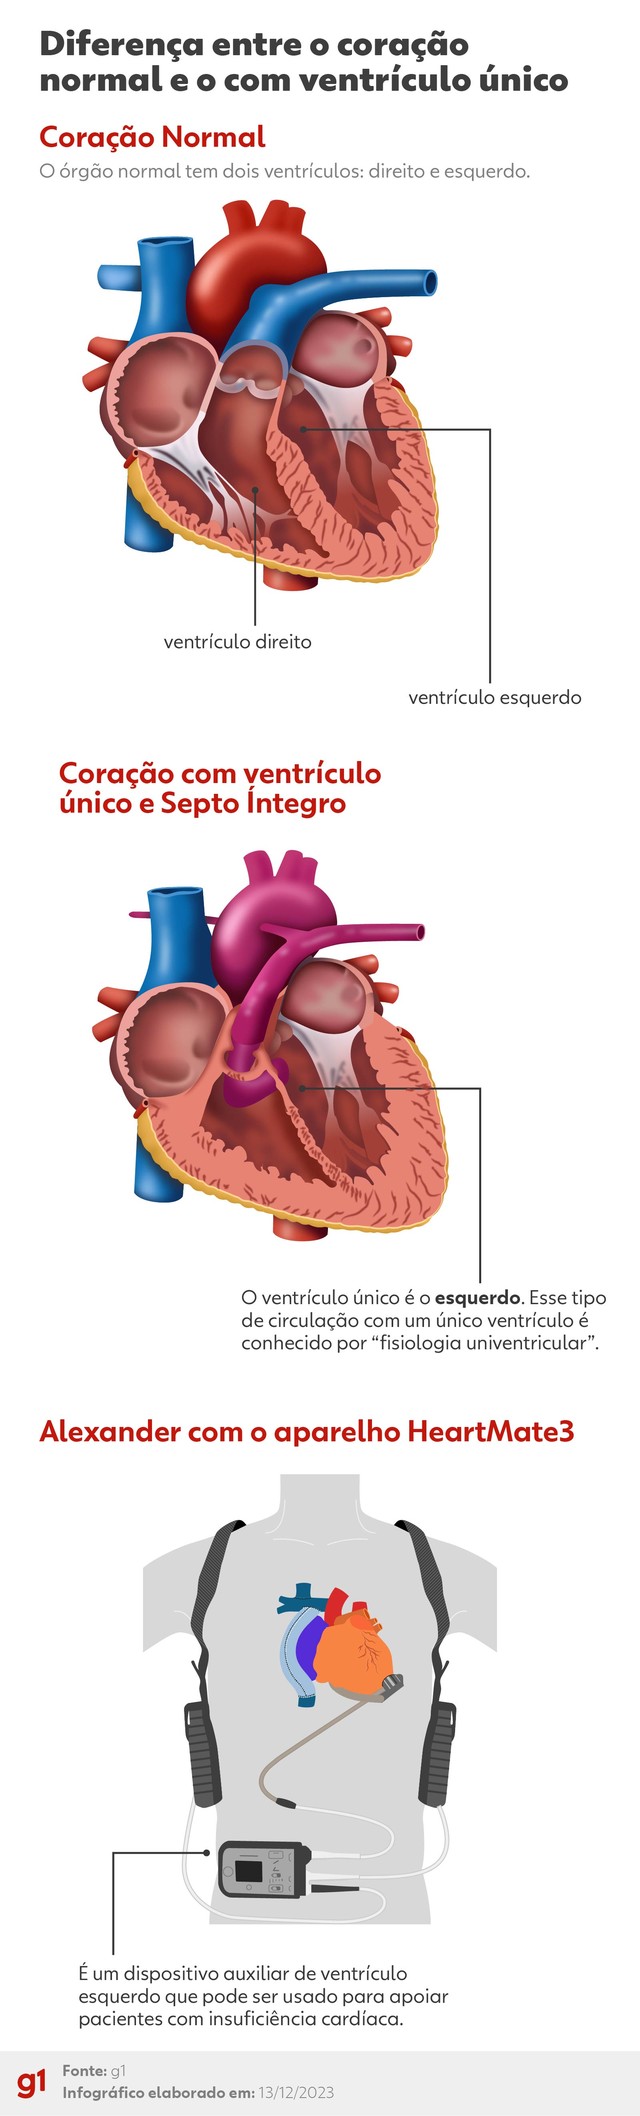 Coração com ventrículo único e Septo Íntegro 